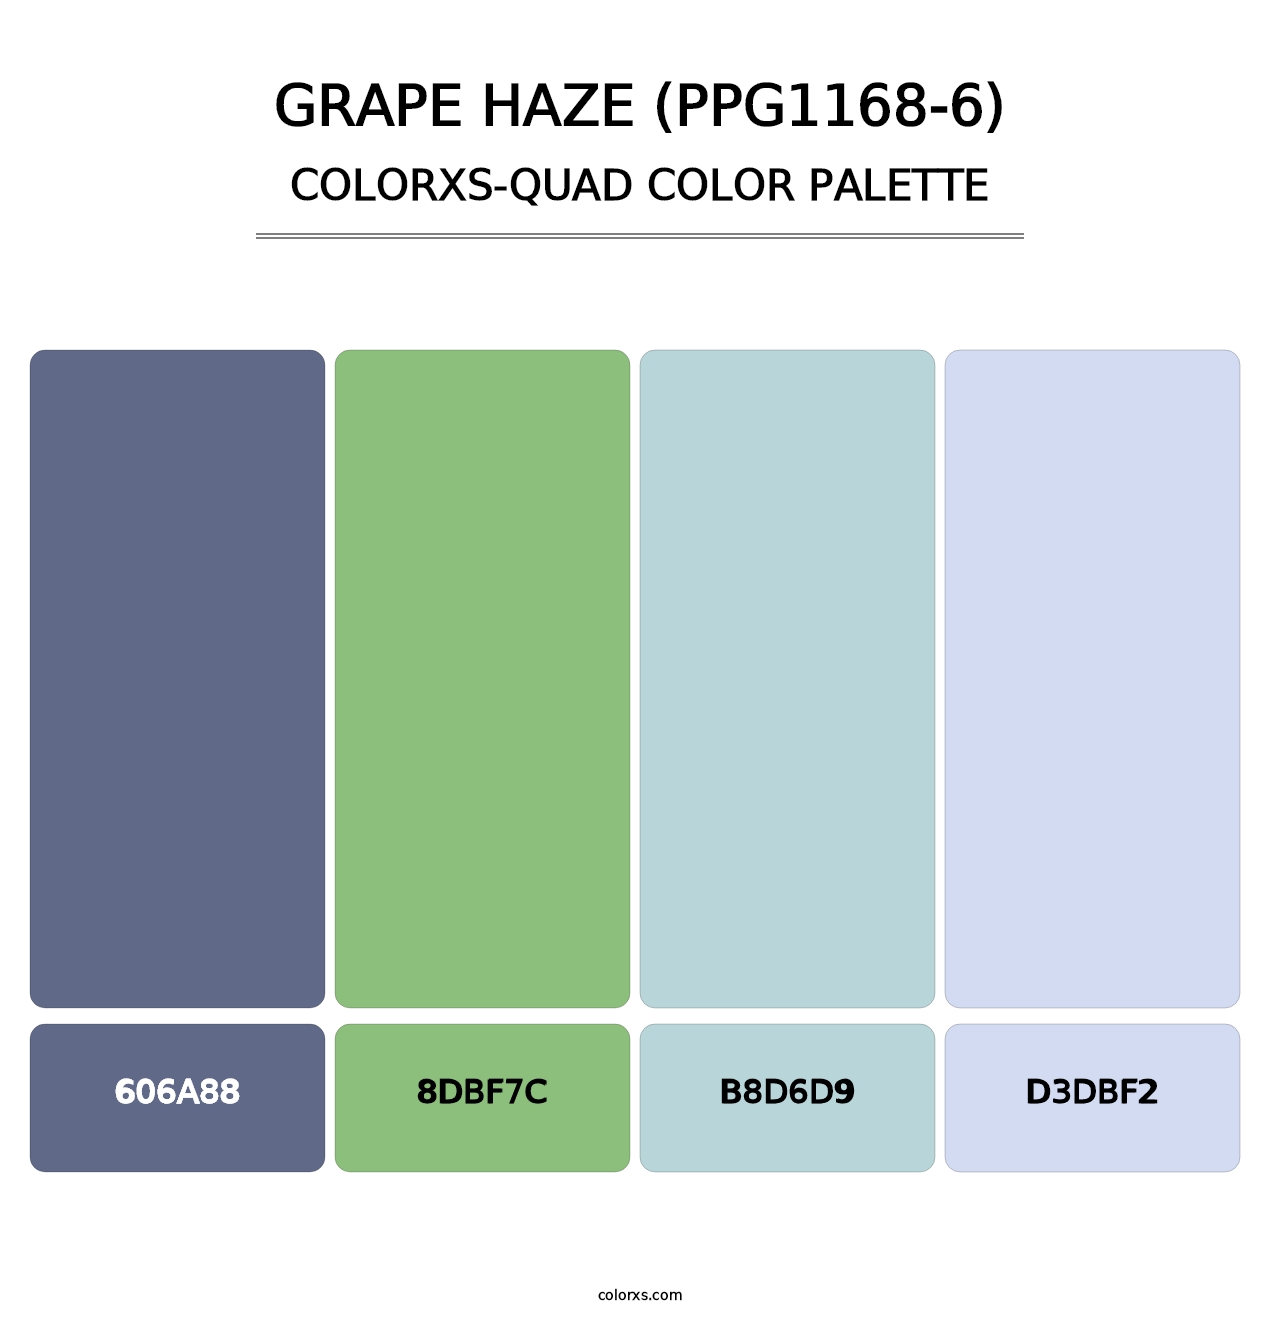 Grape Haze (PPG1168-6) - Colorxs Quad Palette